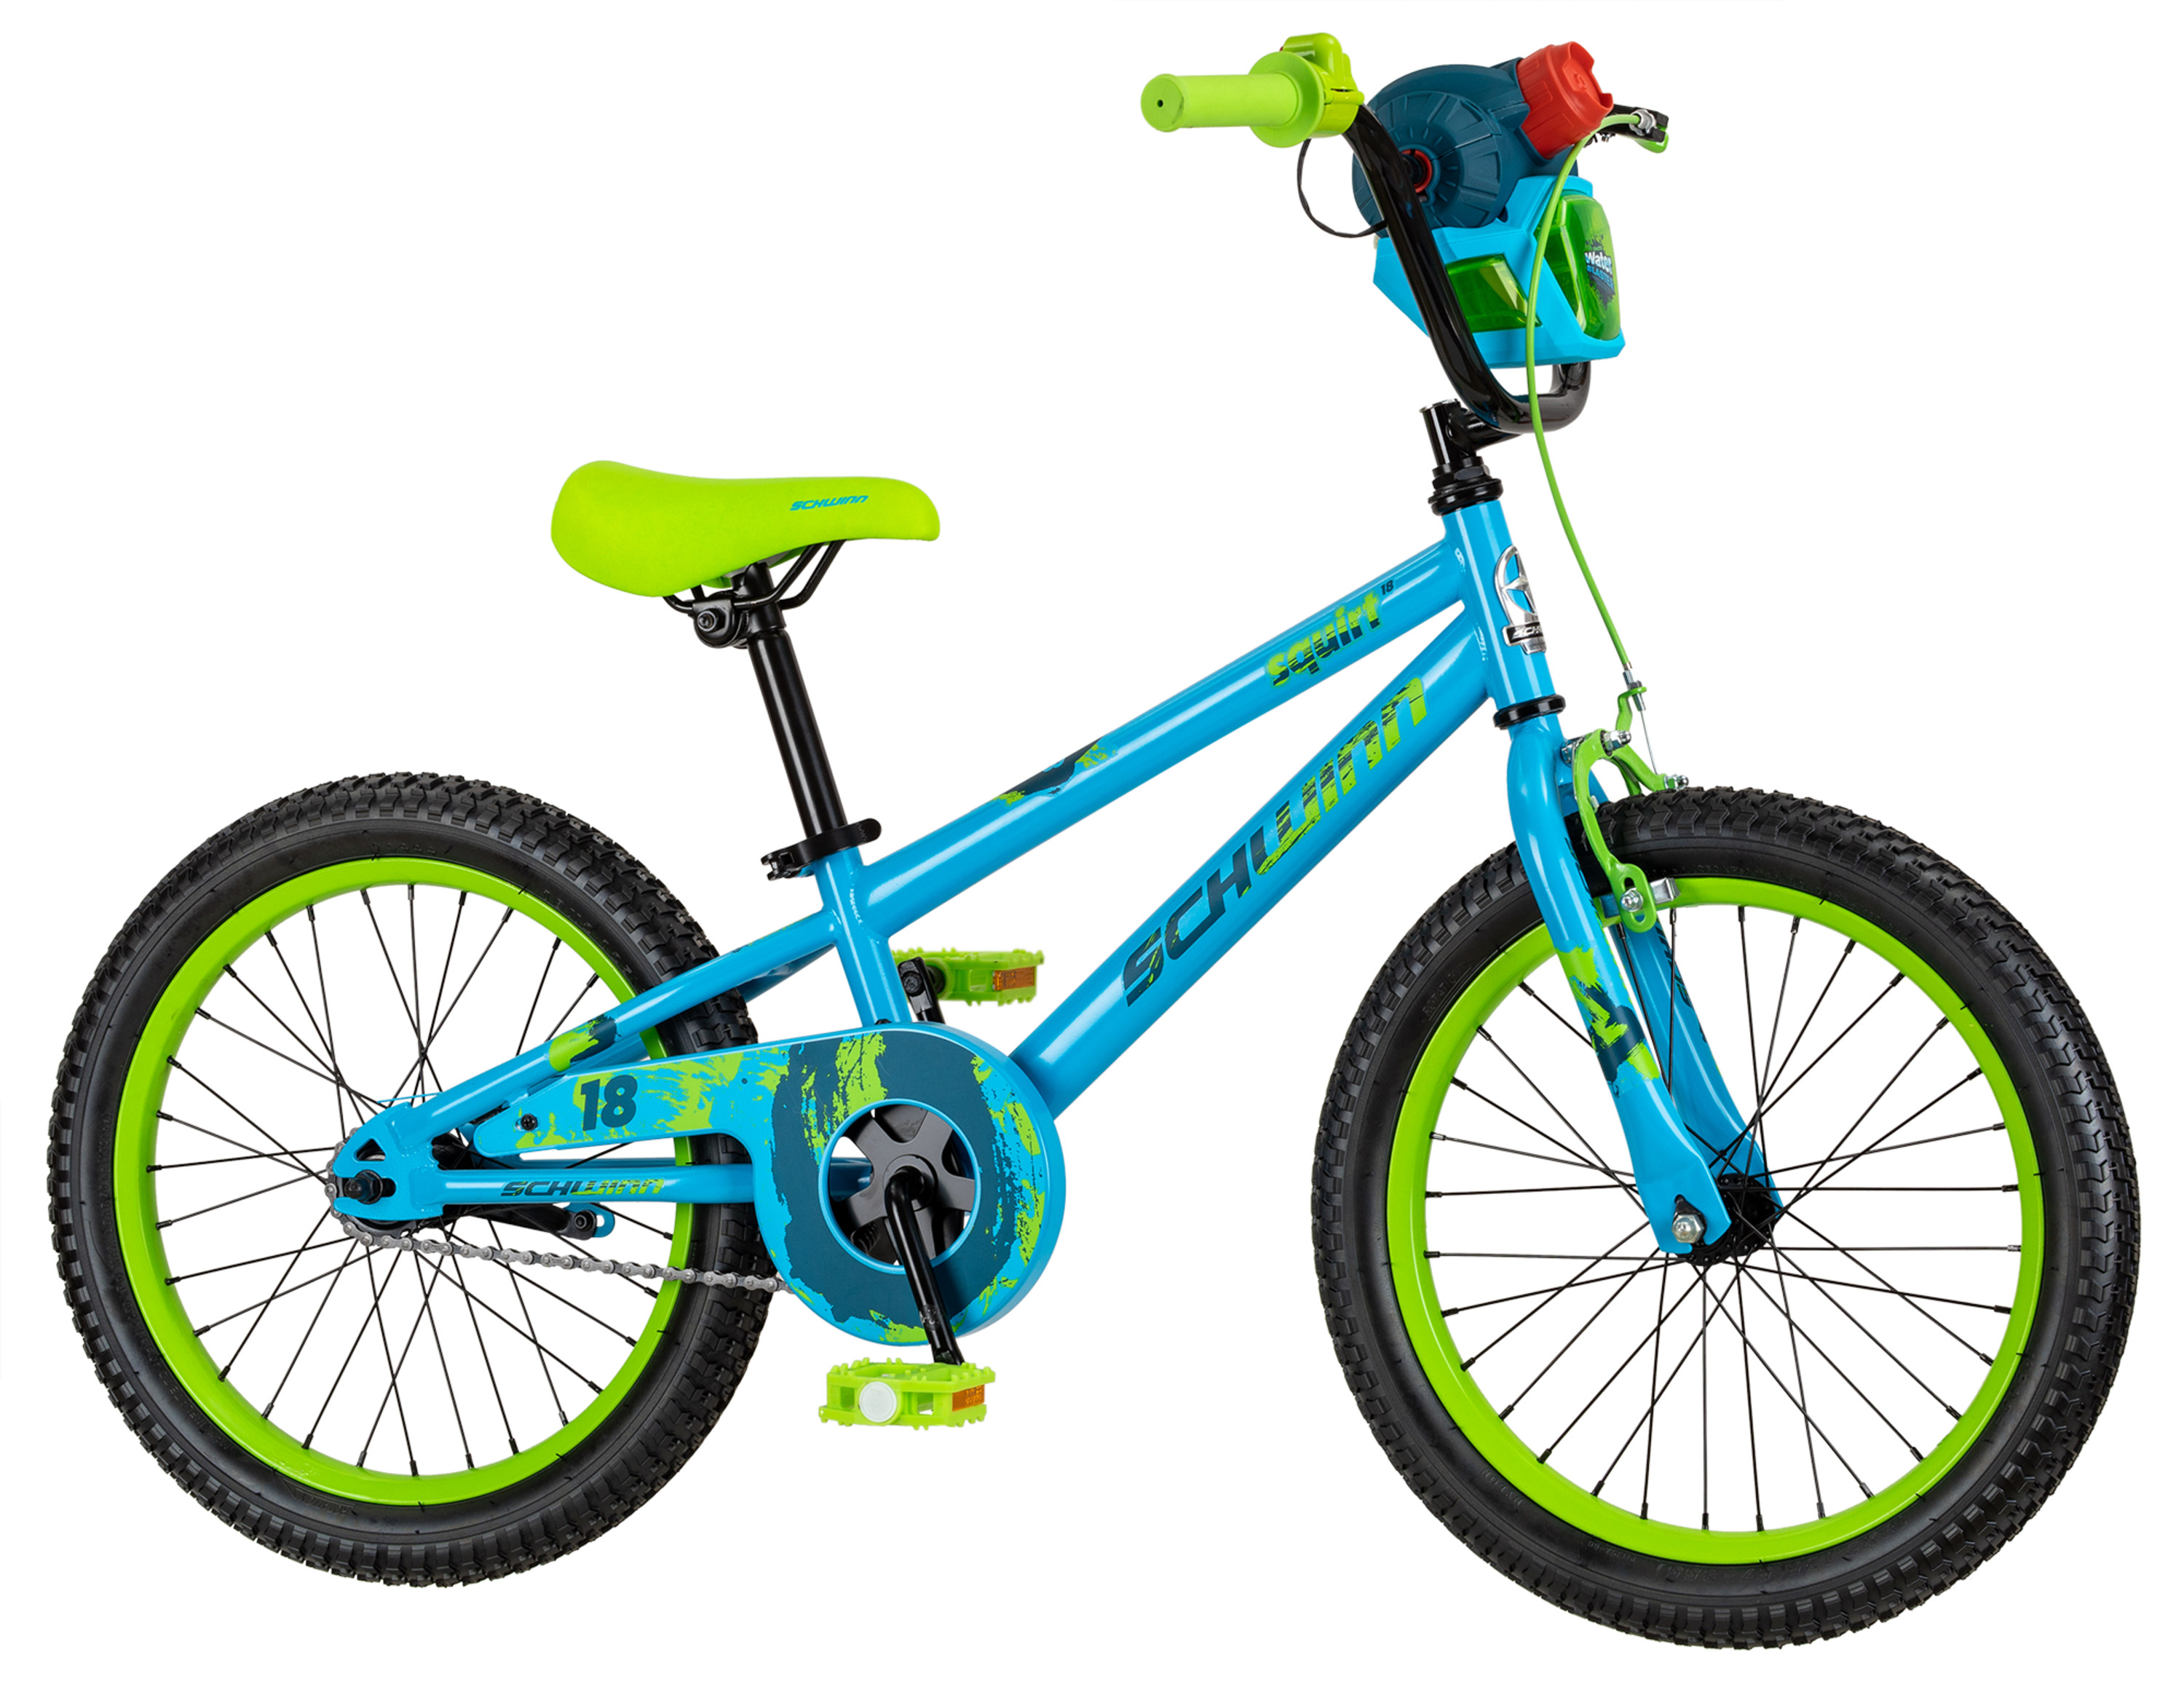 Schwinn Squirt Sidewalk Bike for Kids, 18-inch Wheels, Blue and Green - image 3 of 8